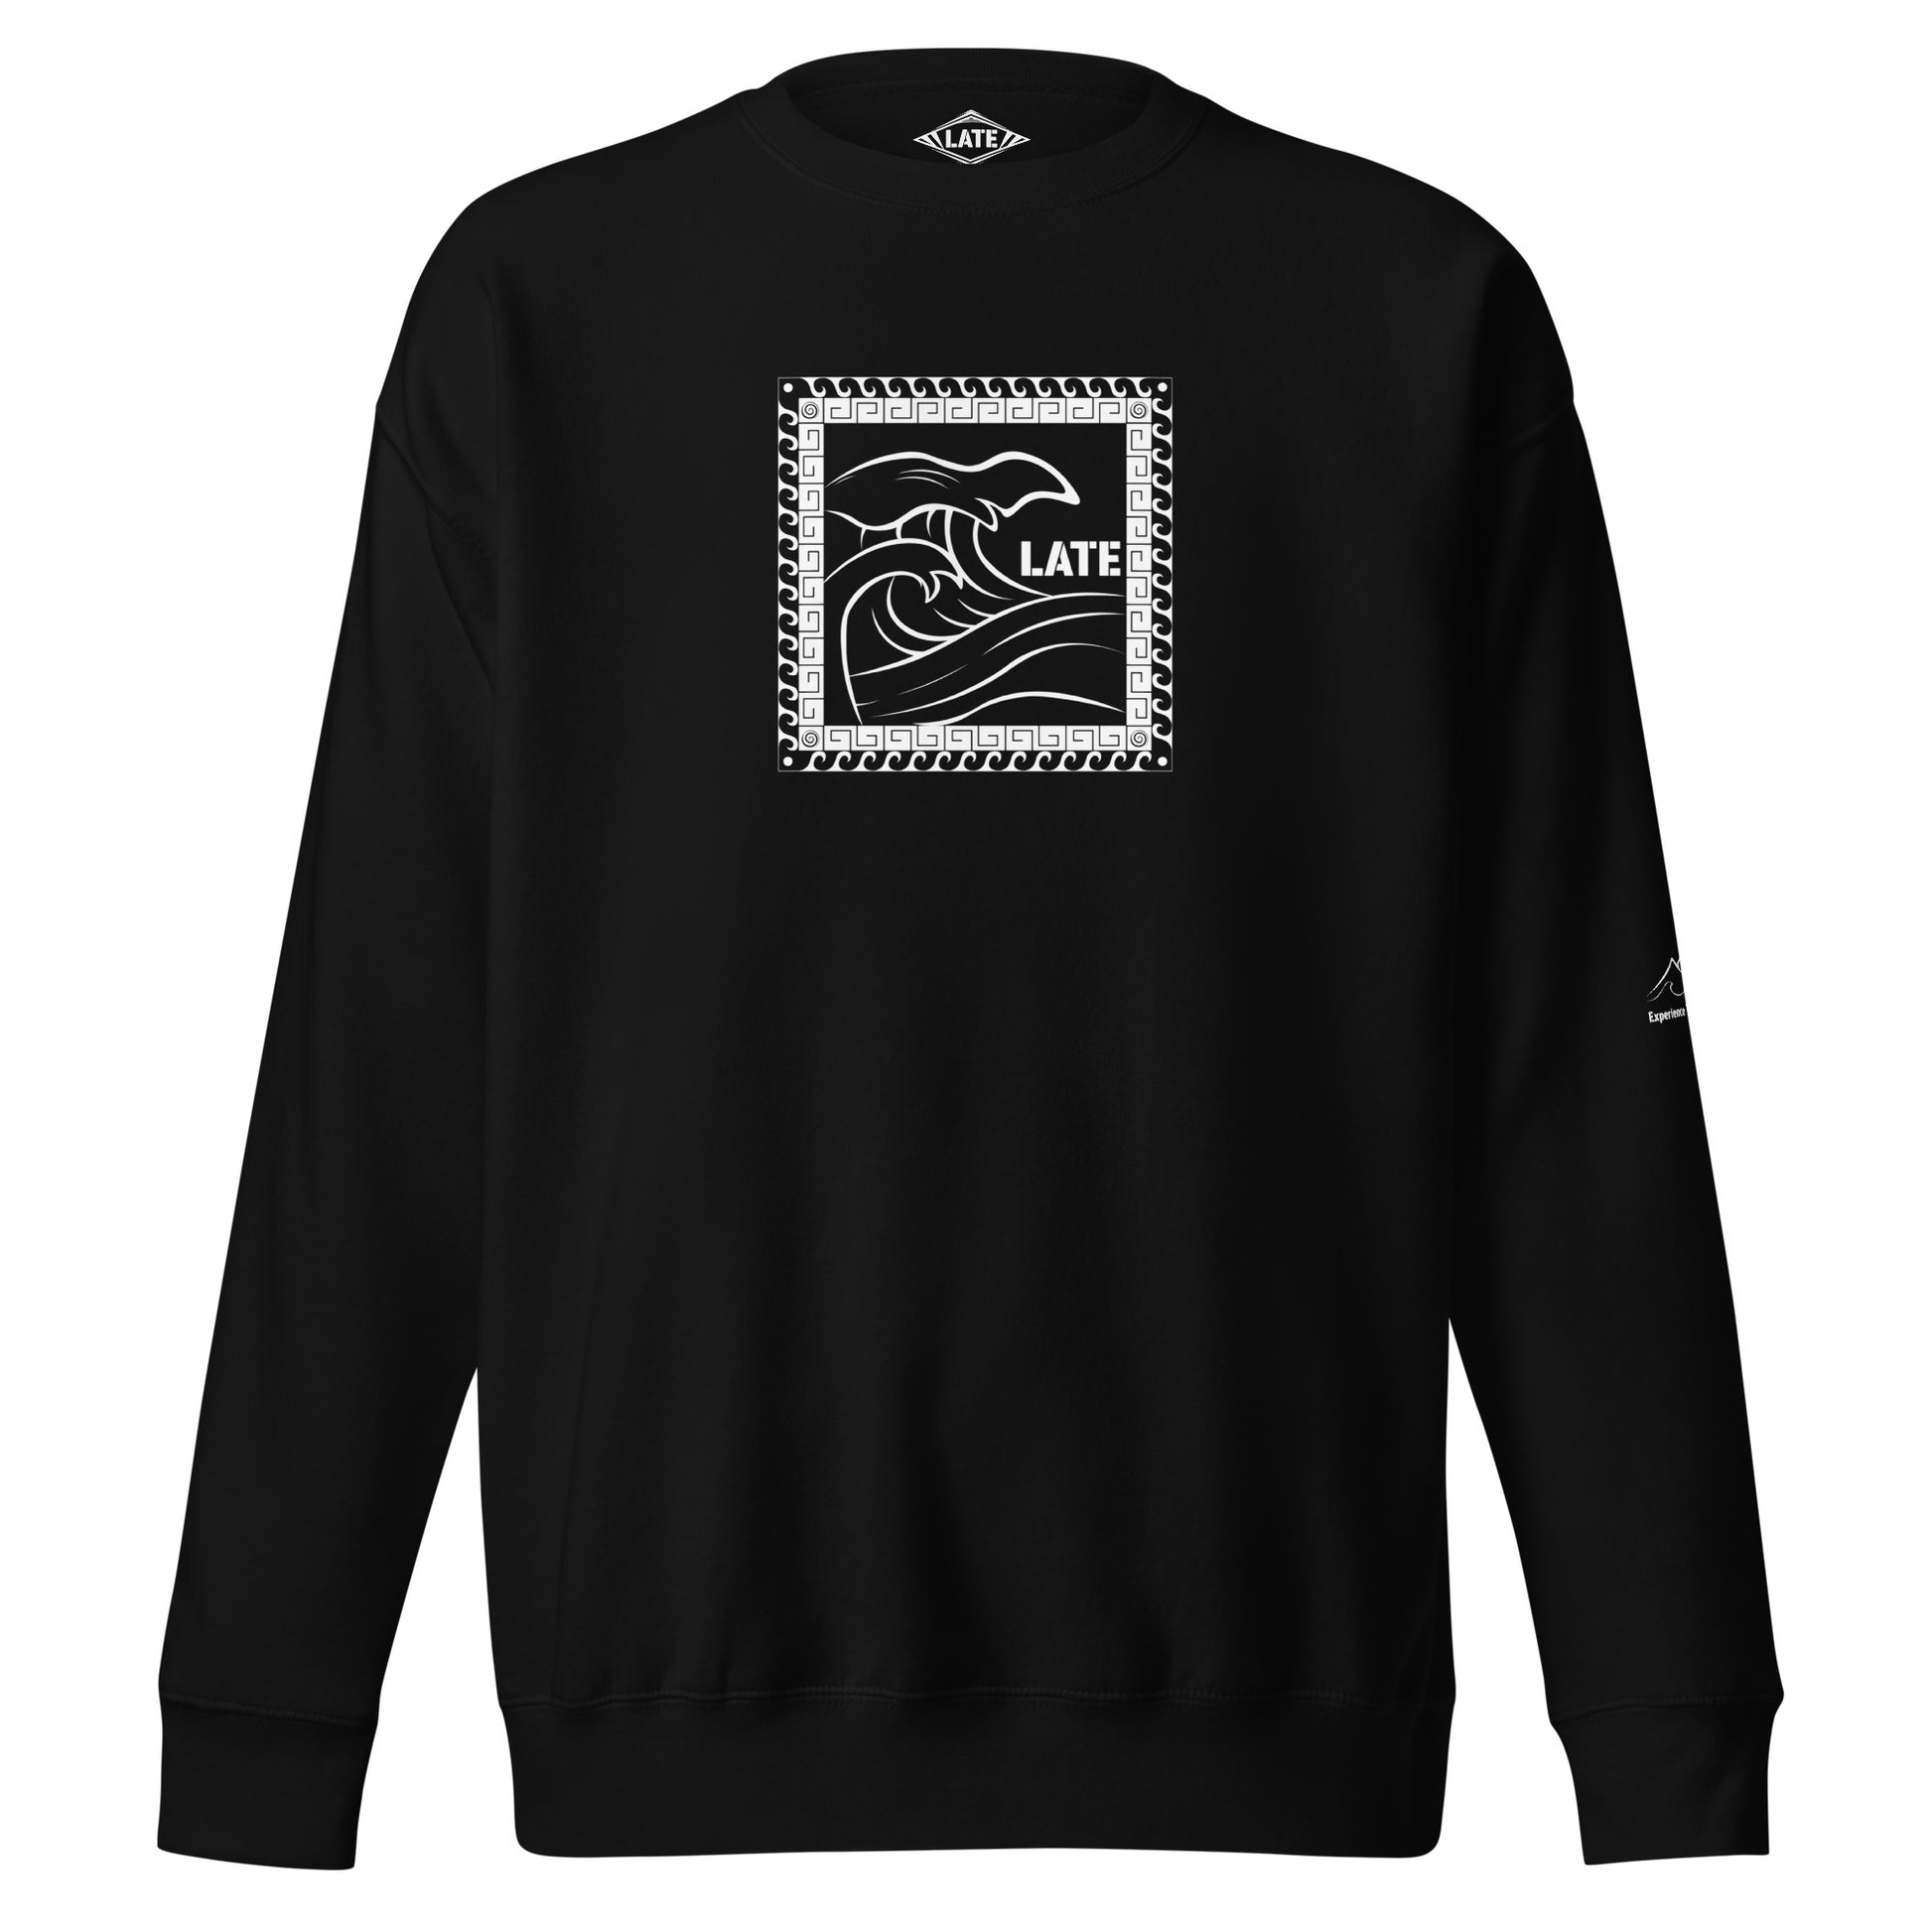 Sweatshirt surf Tricky Wave maori vague japonaise, sweat unisex couleur noir